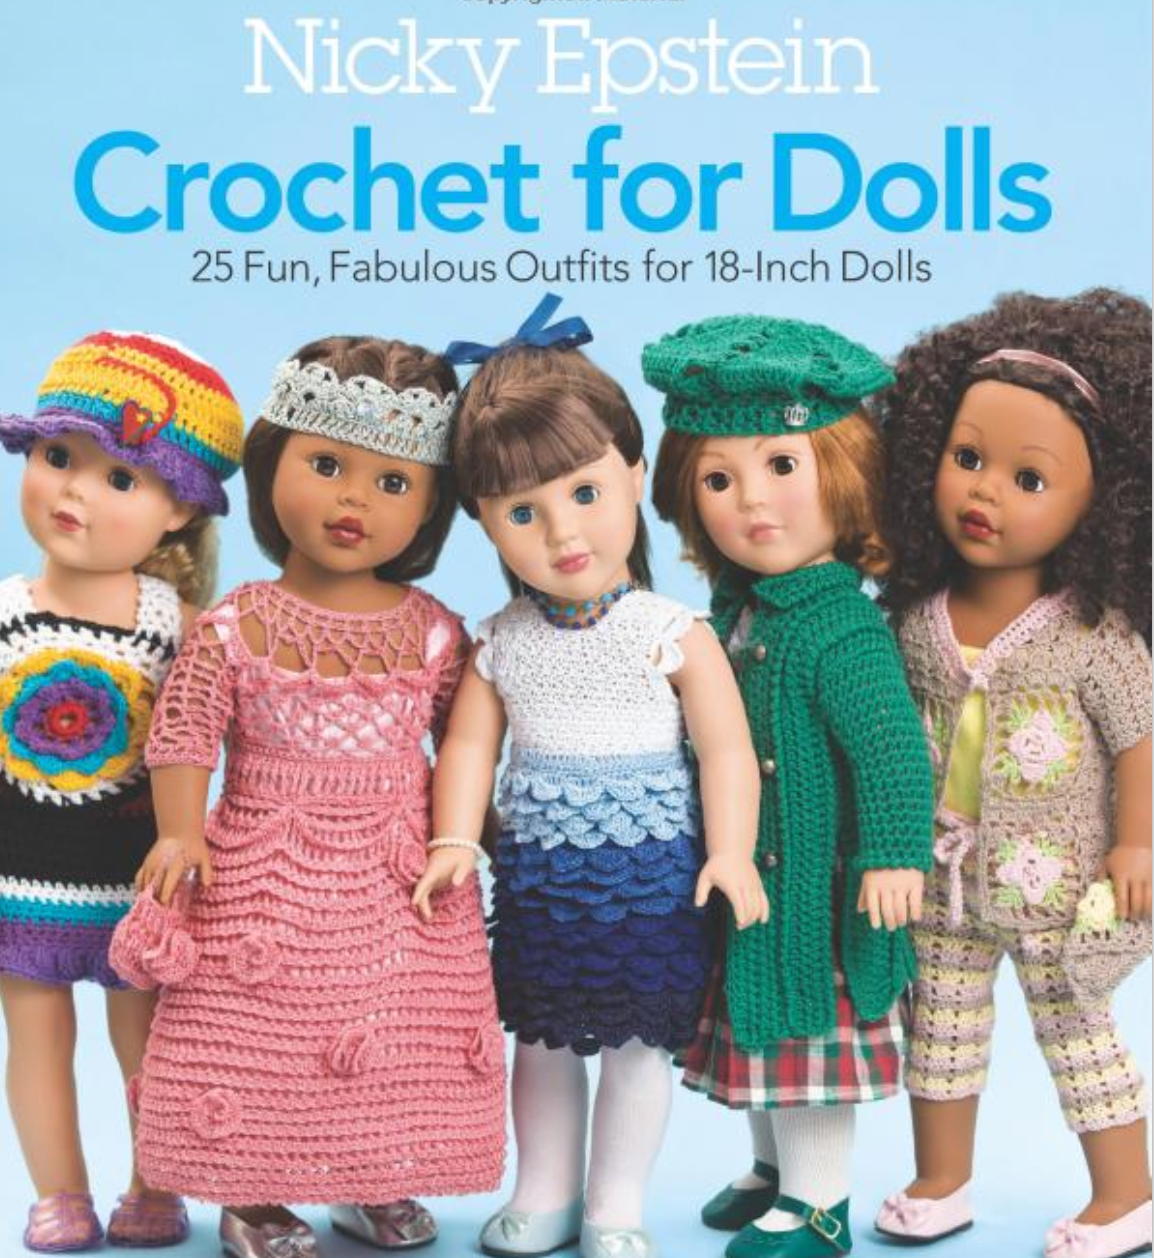 Crochet for Dolls